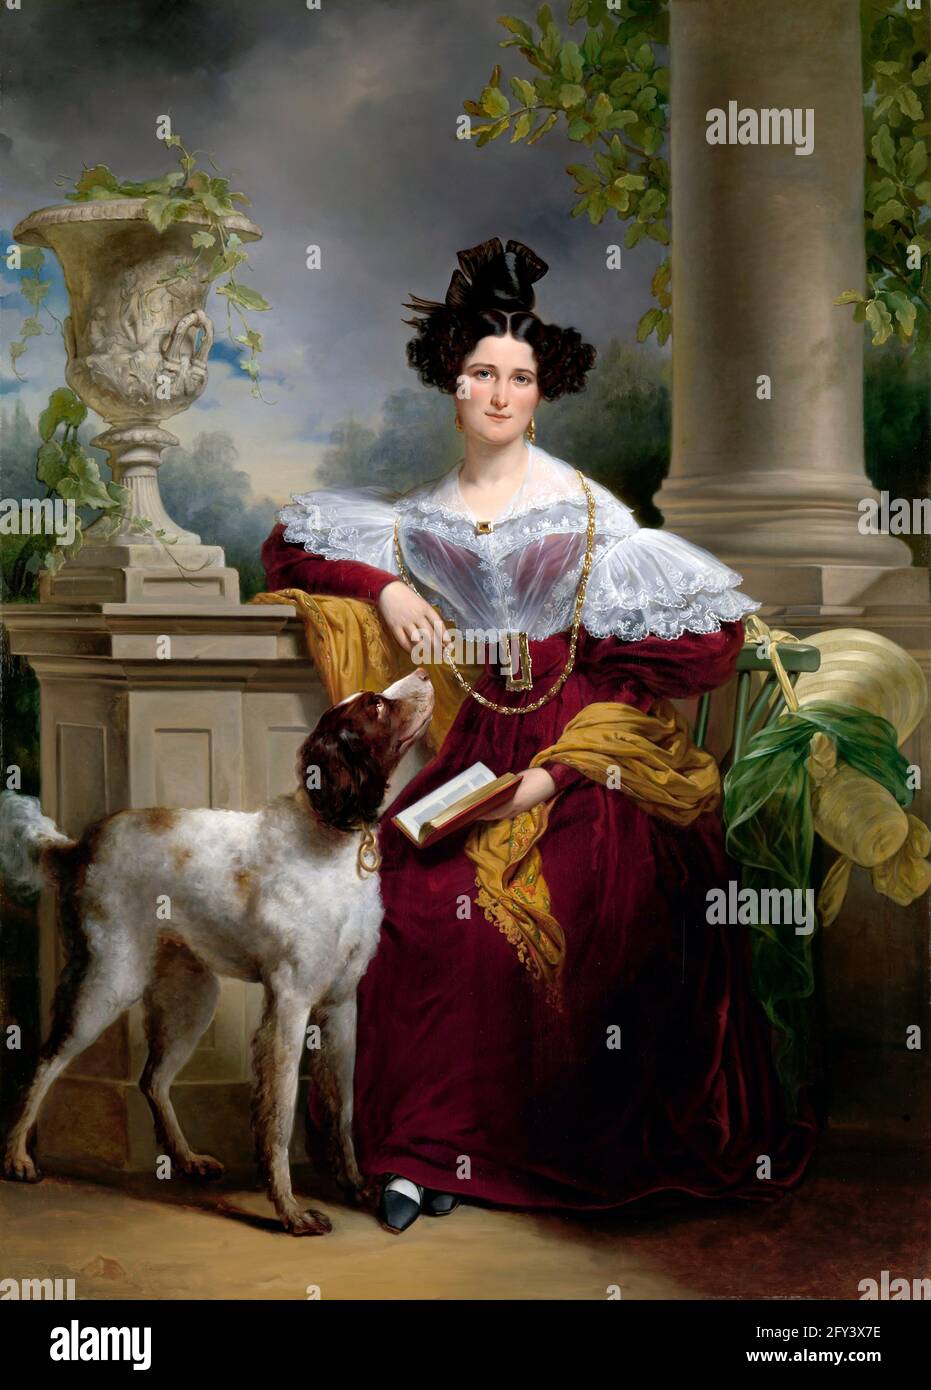 Jan Kruseman. Porträt von Alida Christina Assink des niederländischen Künstlers Jan Adam Kruseman (1804-1862), Öl auf Leinwand, 1833 Stockfoto